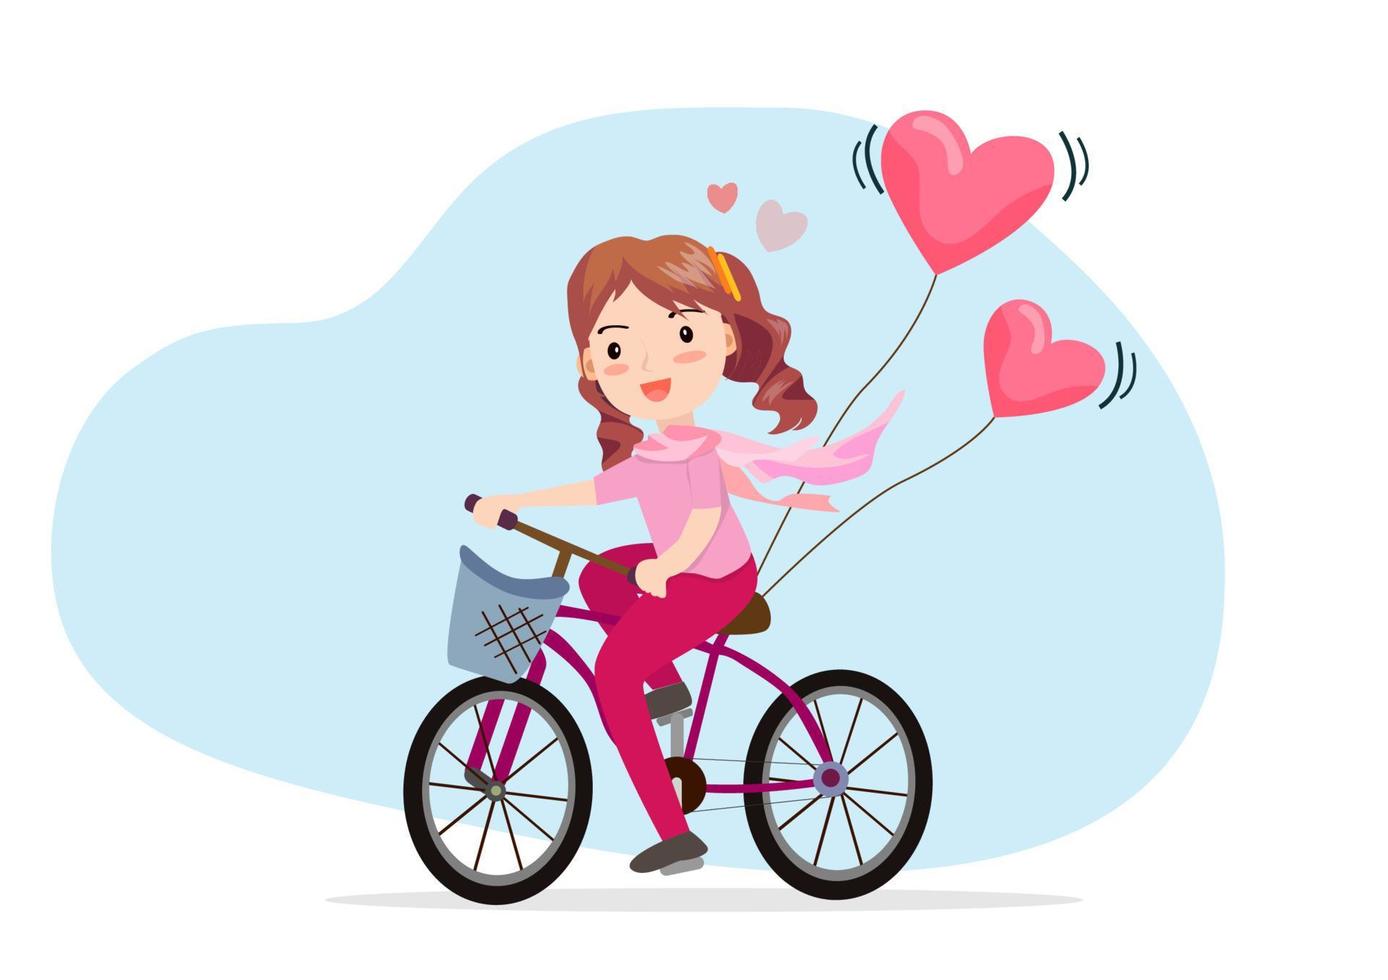 menina andando de bicicleta com balões de coração rosa. vetor de ilustração de desenhos animados de estilo simples